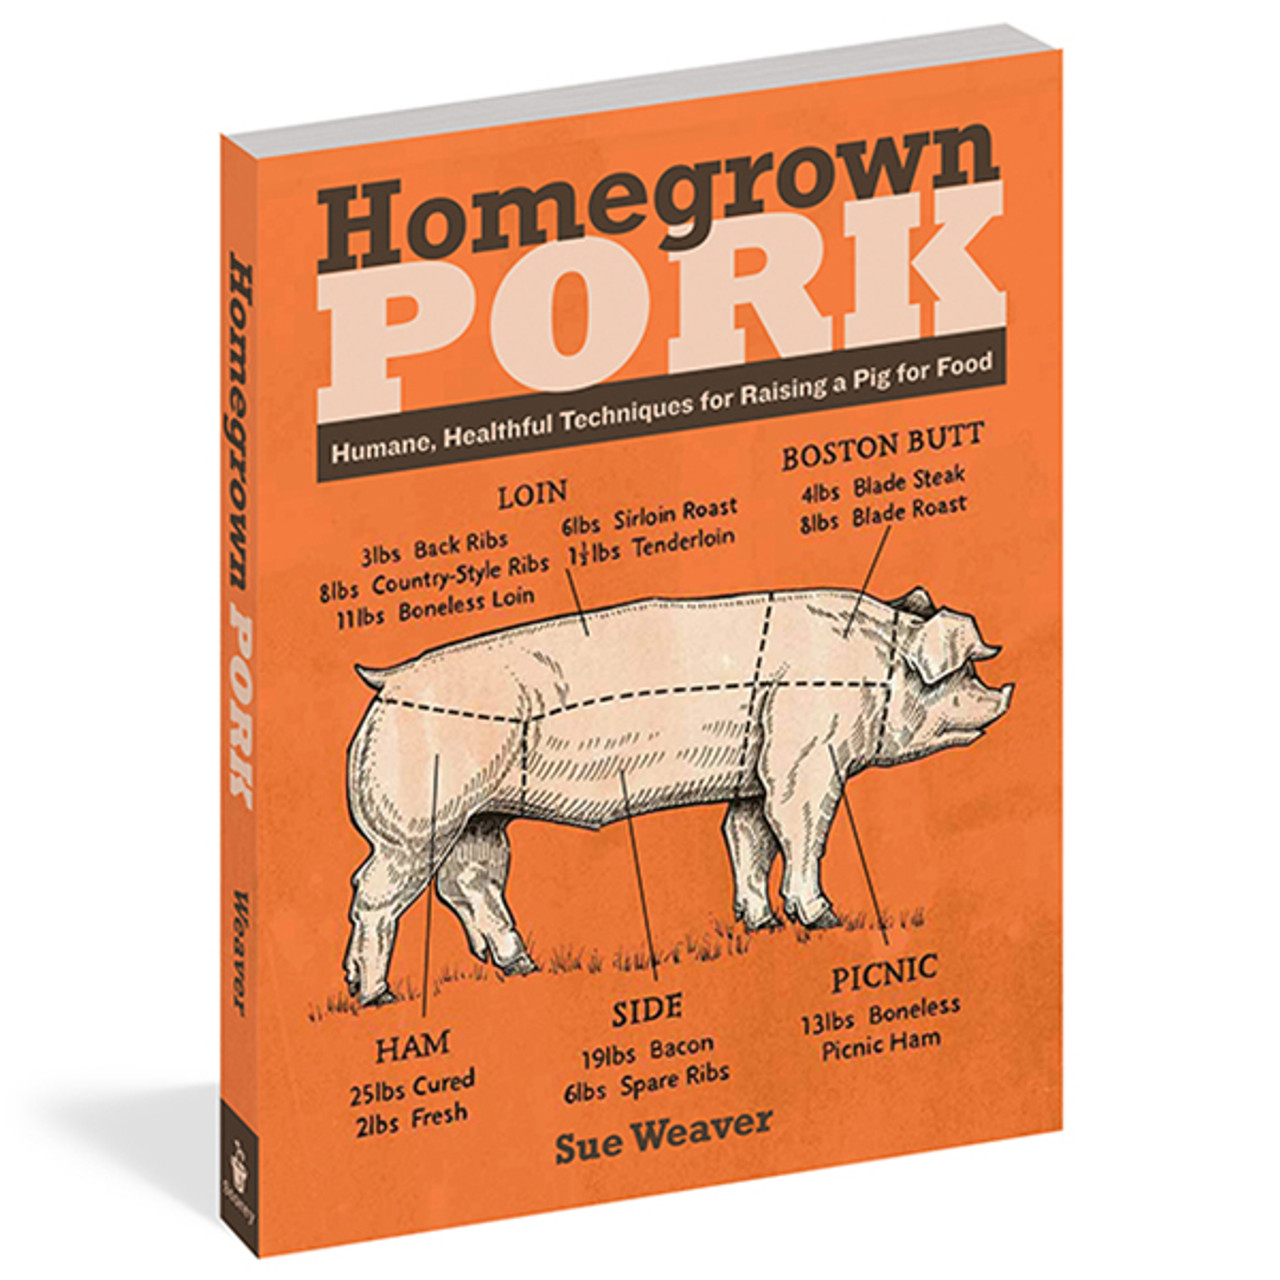 Homegrown [Book]